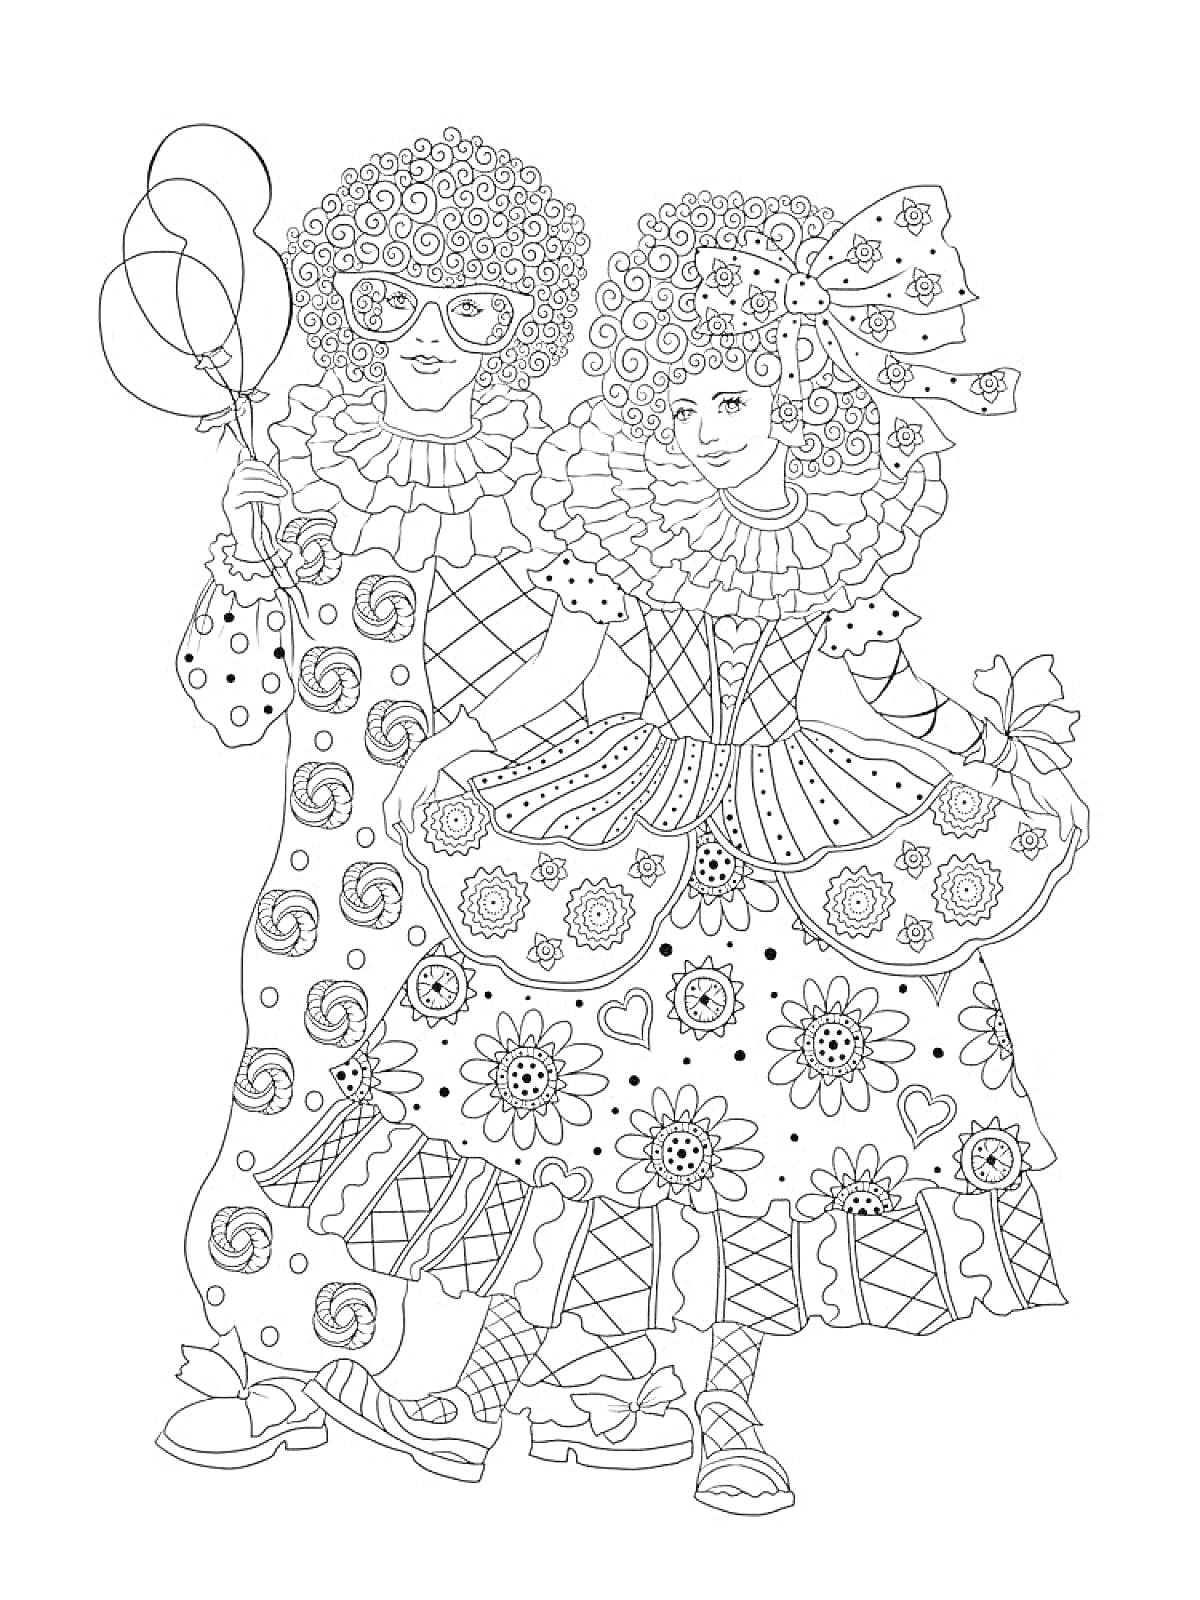 Раскраска Два человека на карнавале, одеты в костюмы с узорами, один держит три воздушных шара, костюмы украшены цветами и завитушками